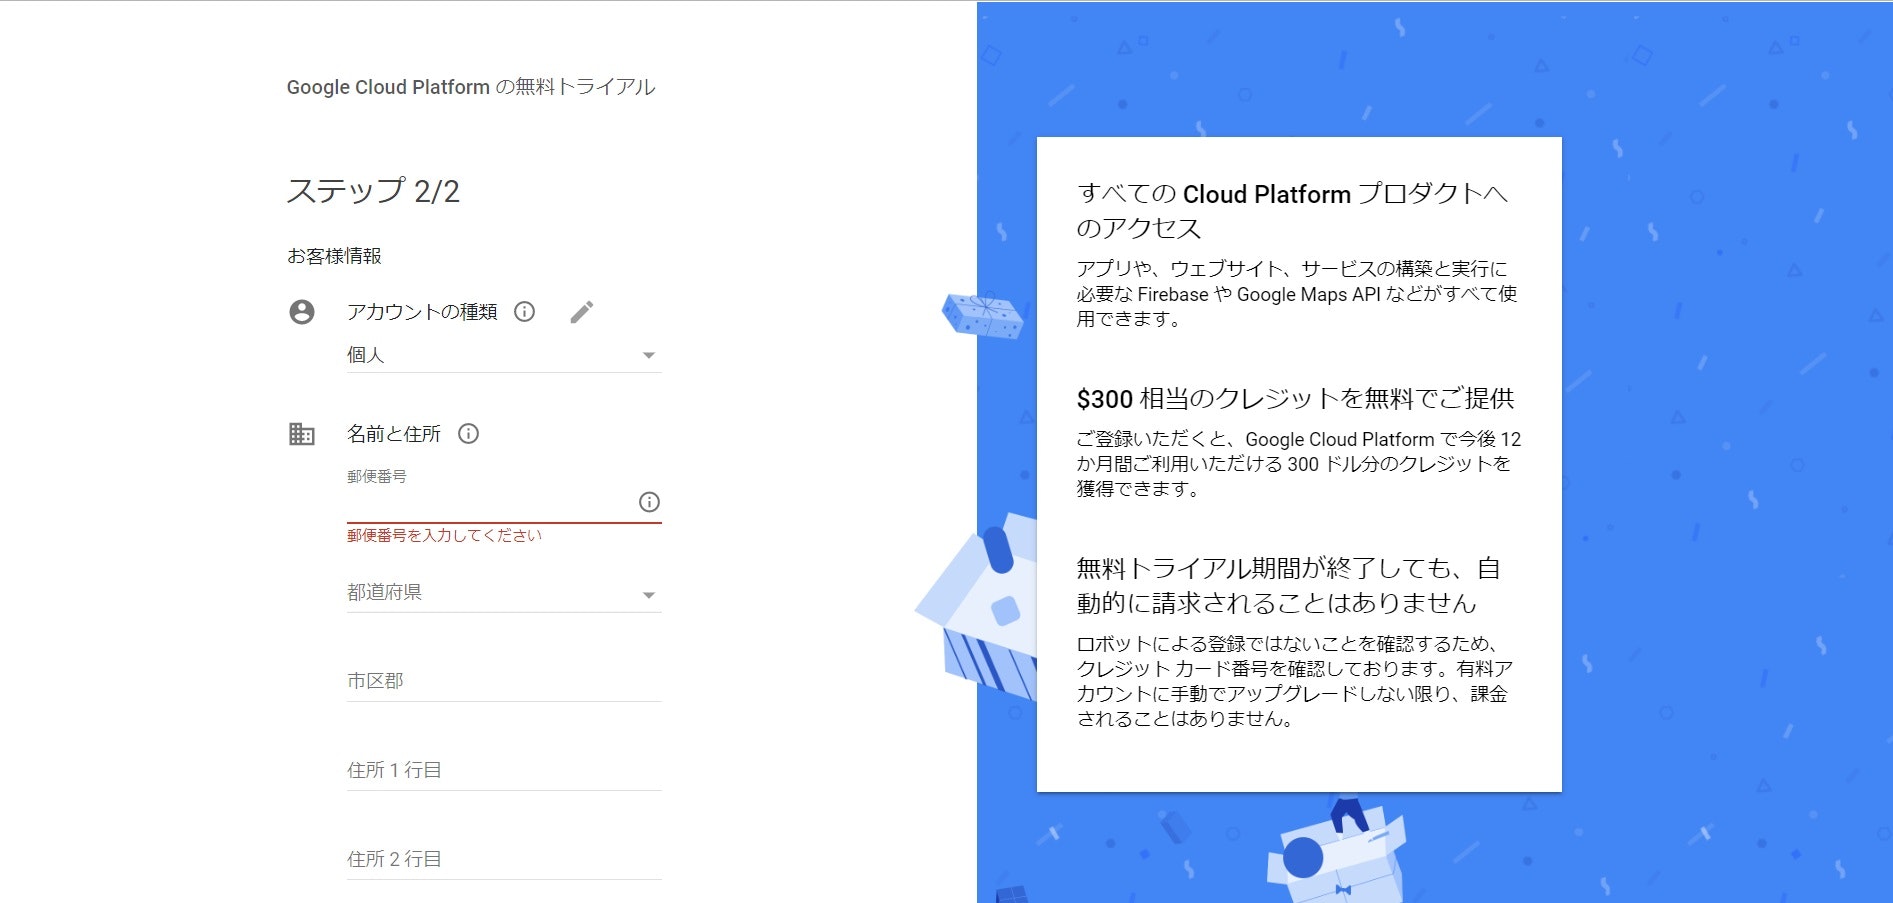 クラウド コンピューティング サービス  _  Google Cloud - Google Chrome 2019_08_15 16_33_45.jpg